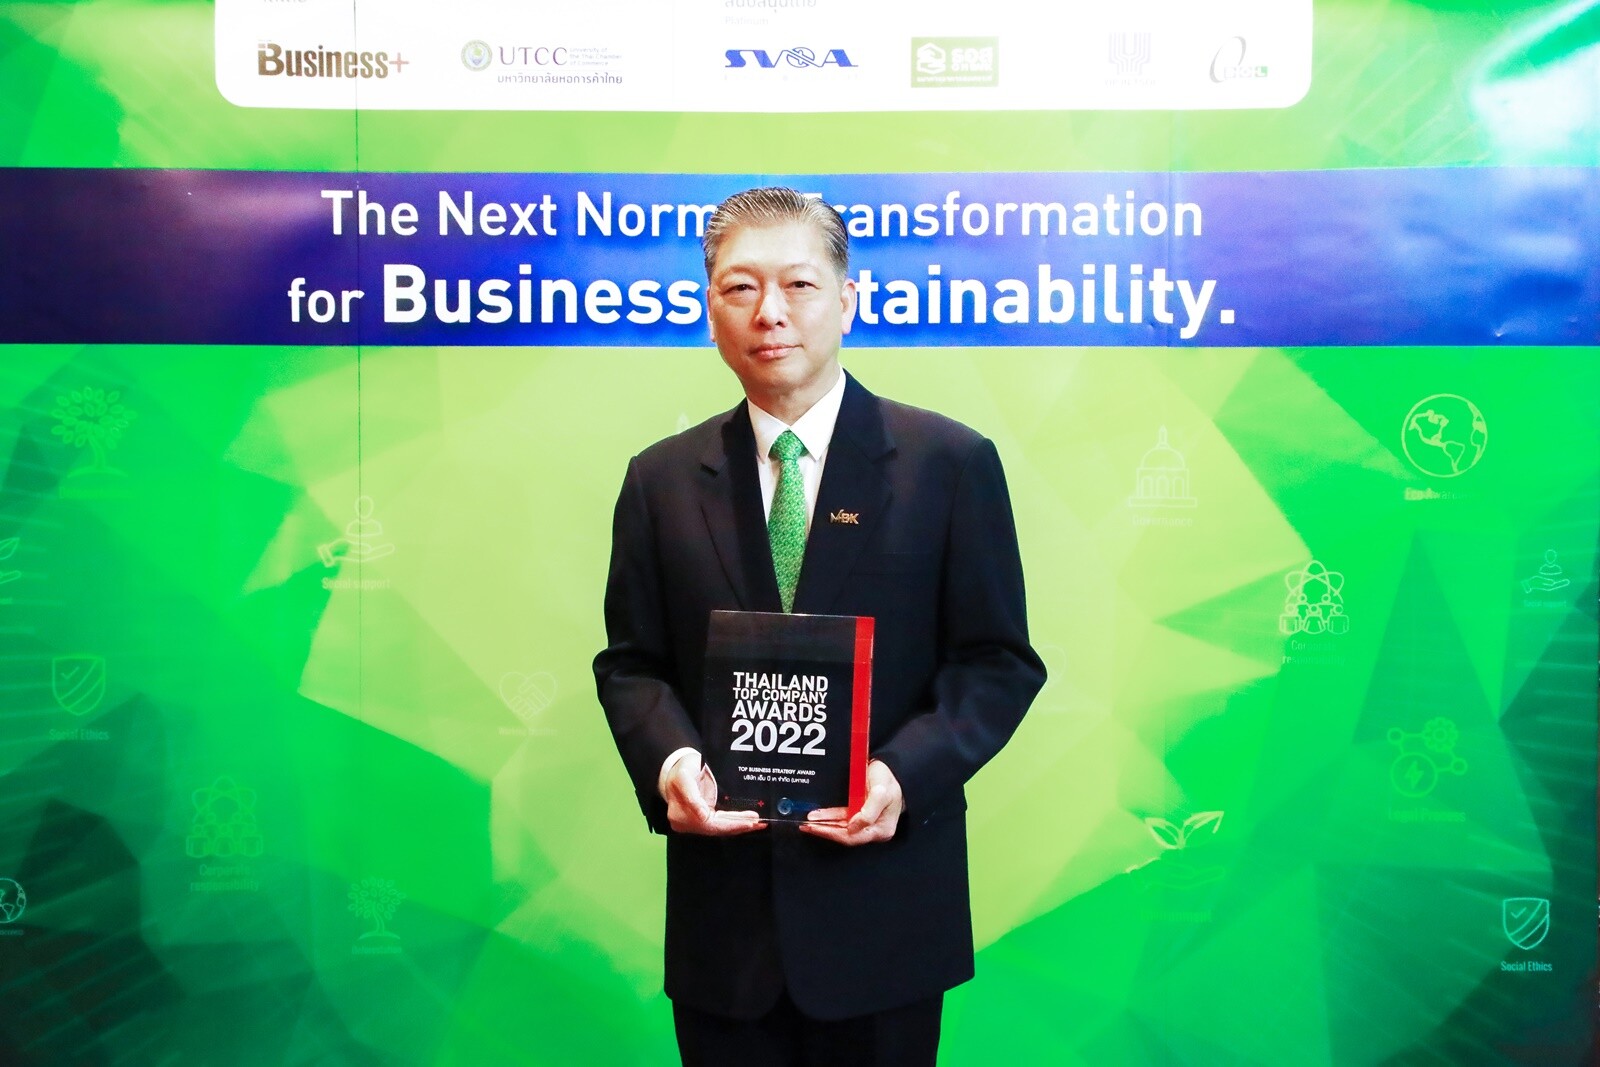 เอ็ม บี เค คว้ารางวัล THAILAND TOP COMPANY AWARDS 2022 ประเภทความเป็นเลิศ "Top Business Strategy Award 2022"